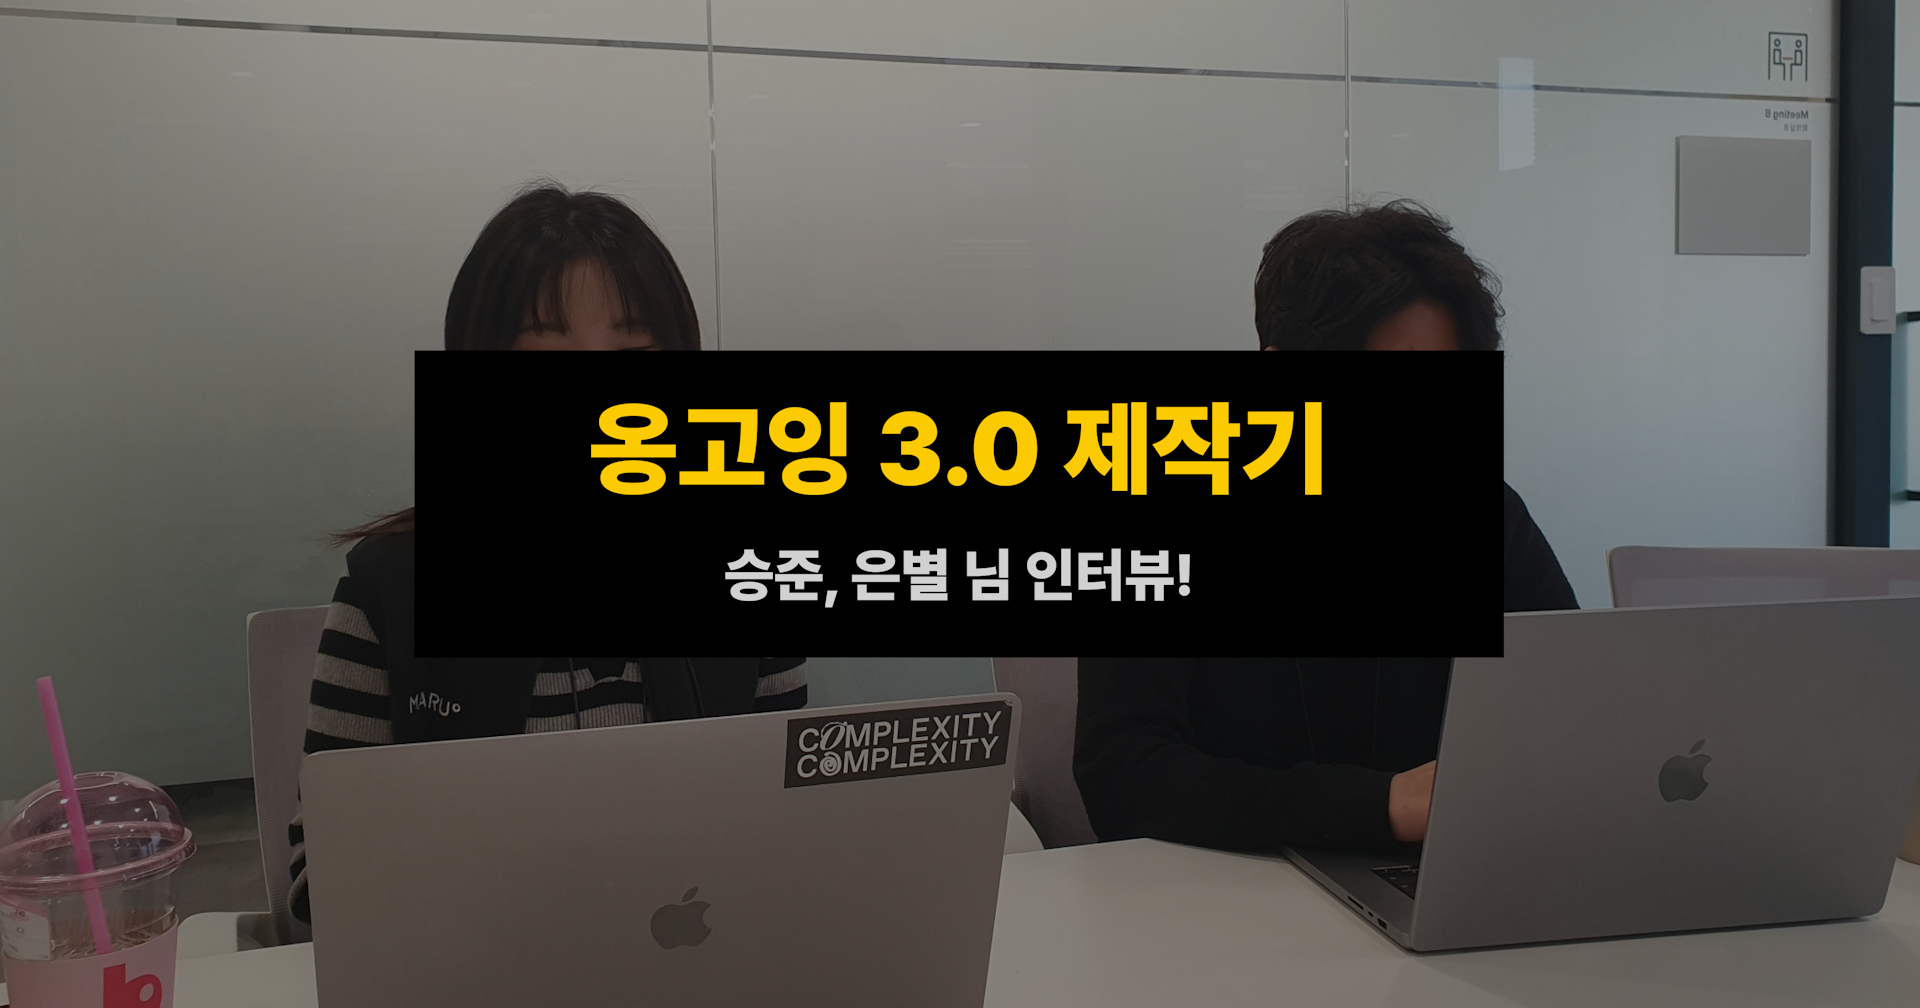 옹고잉 3.0 제작기 - 은별, 승준 님 인터뷰!